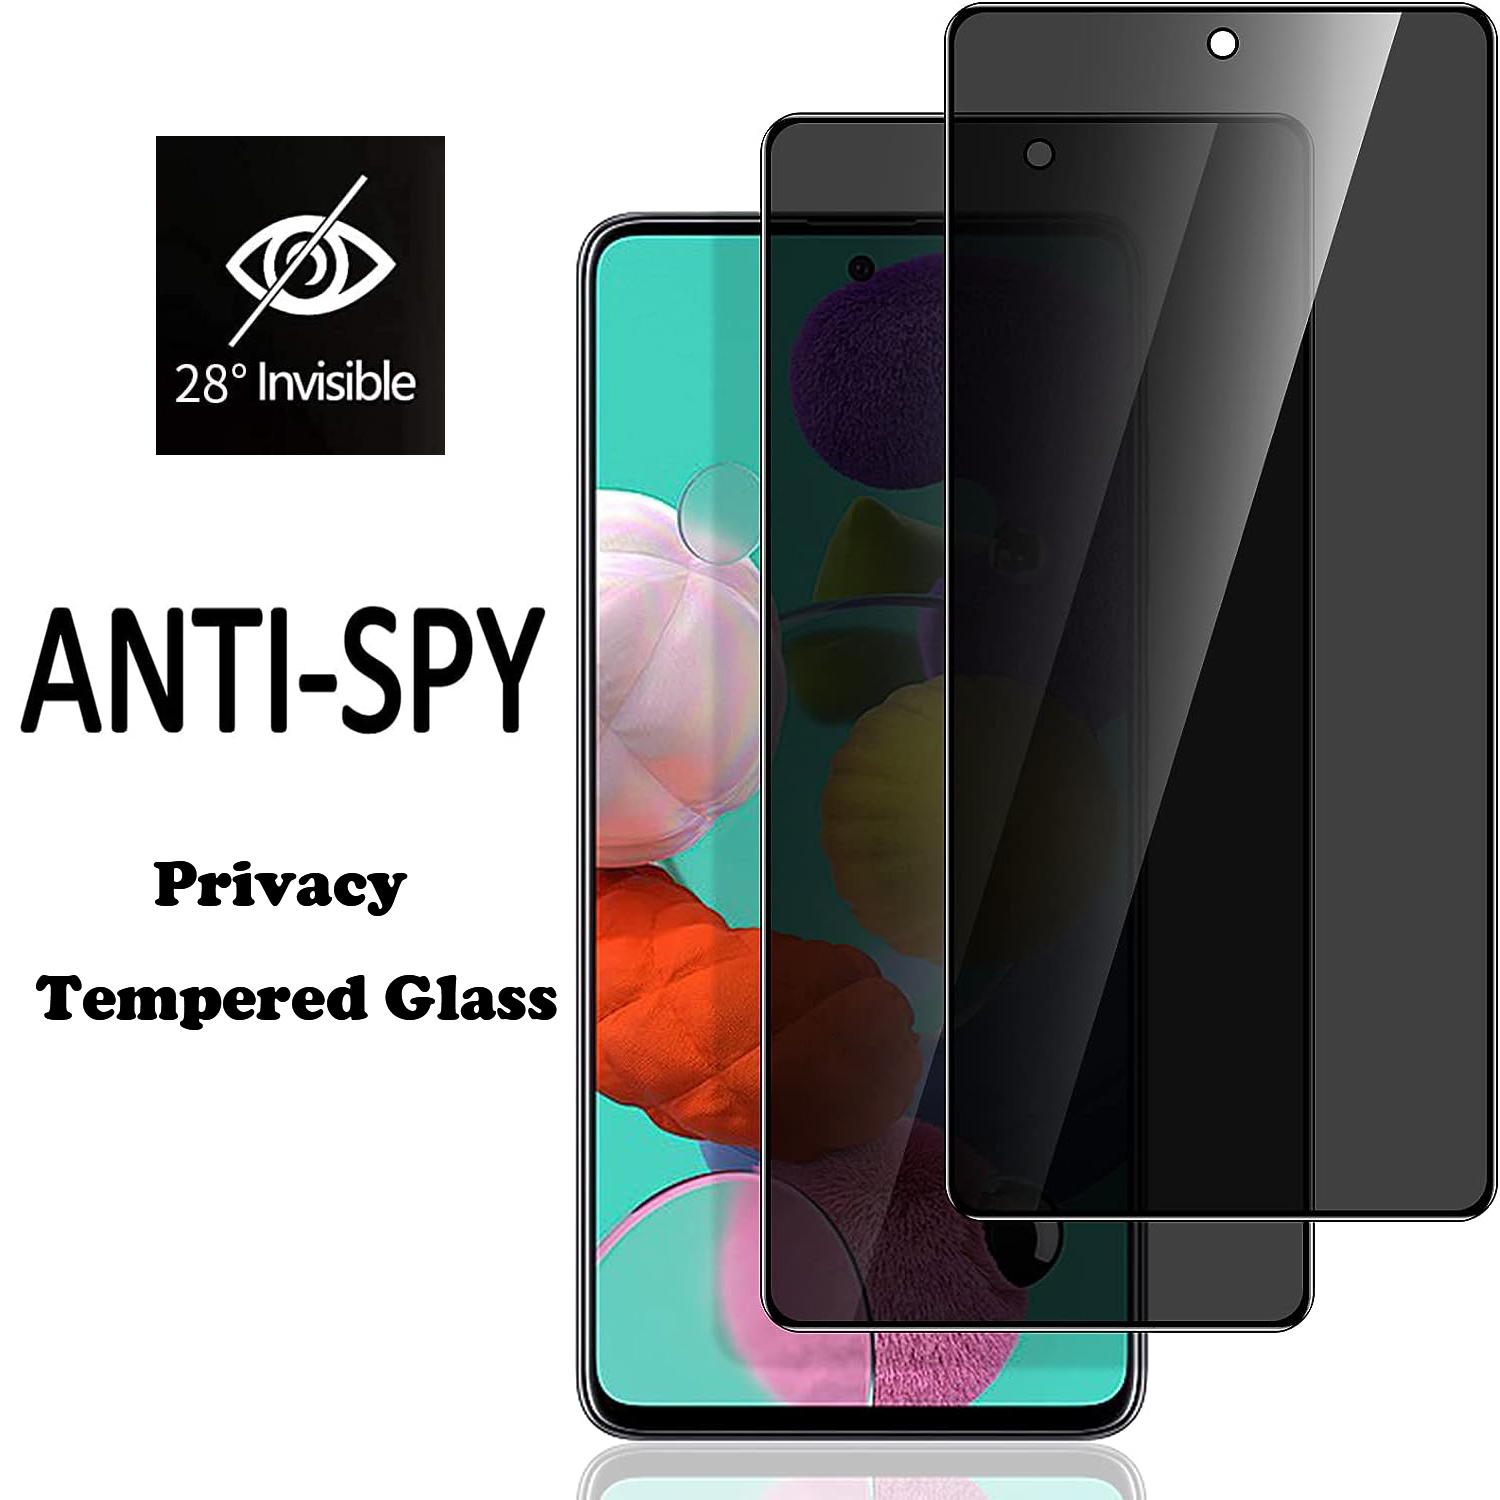 Miếng dán màn hình chống nhìn trộm 3D cho Samsung Galaxy A73 A53 A33 A23 A13 A03 A72 A52 a52s A32 A22 A12 5G 4G bọc hoàn toàn miếng dán film thủy tinh cường lực chống cháy nổ